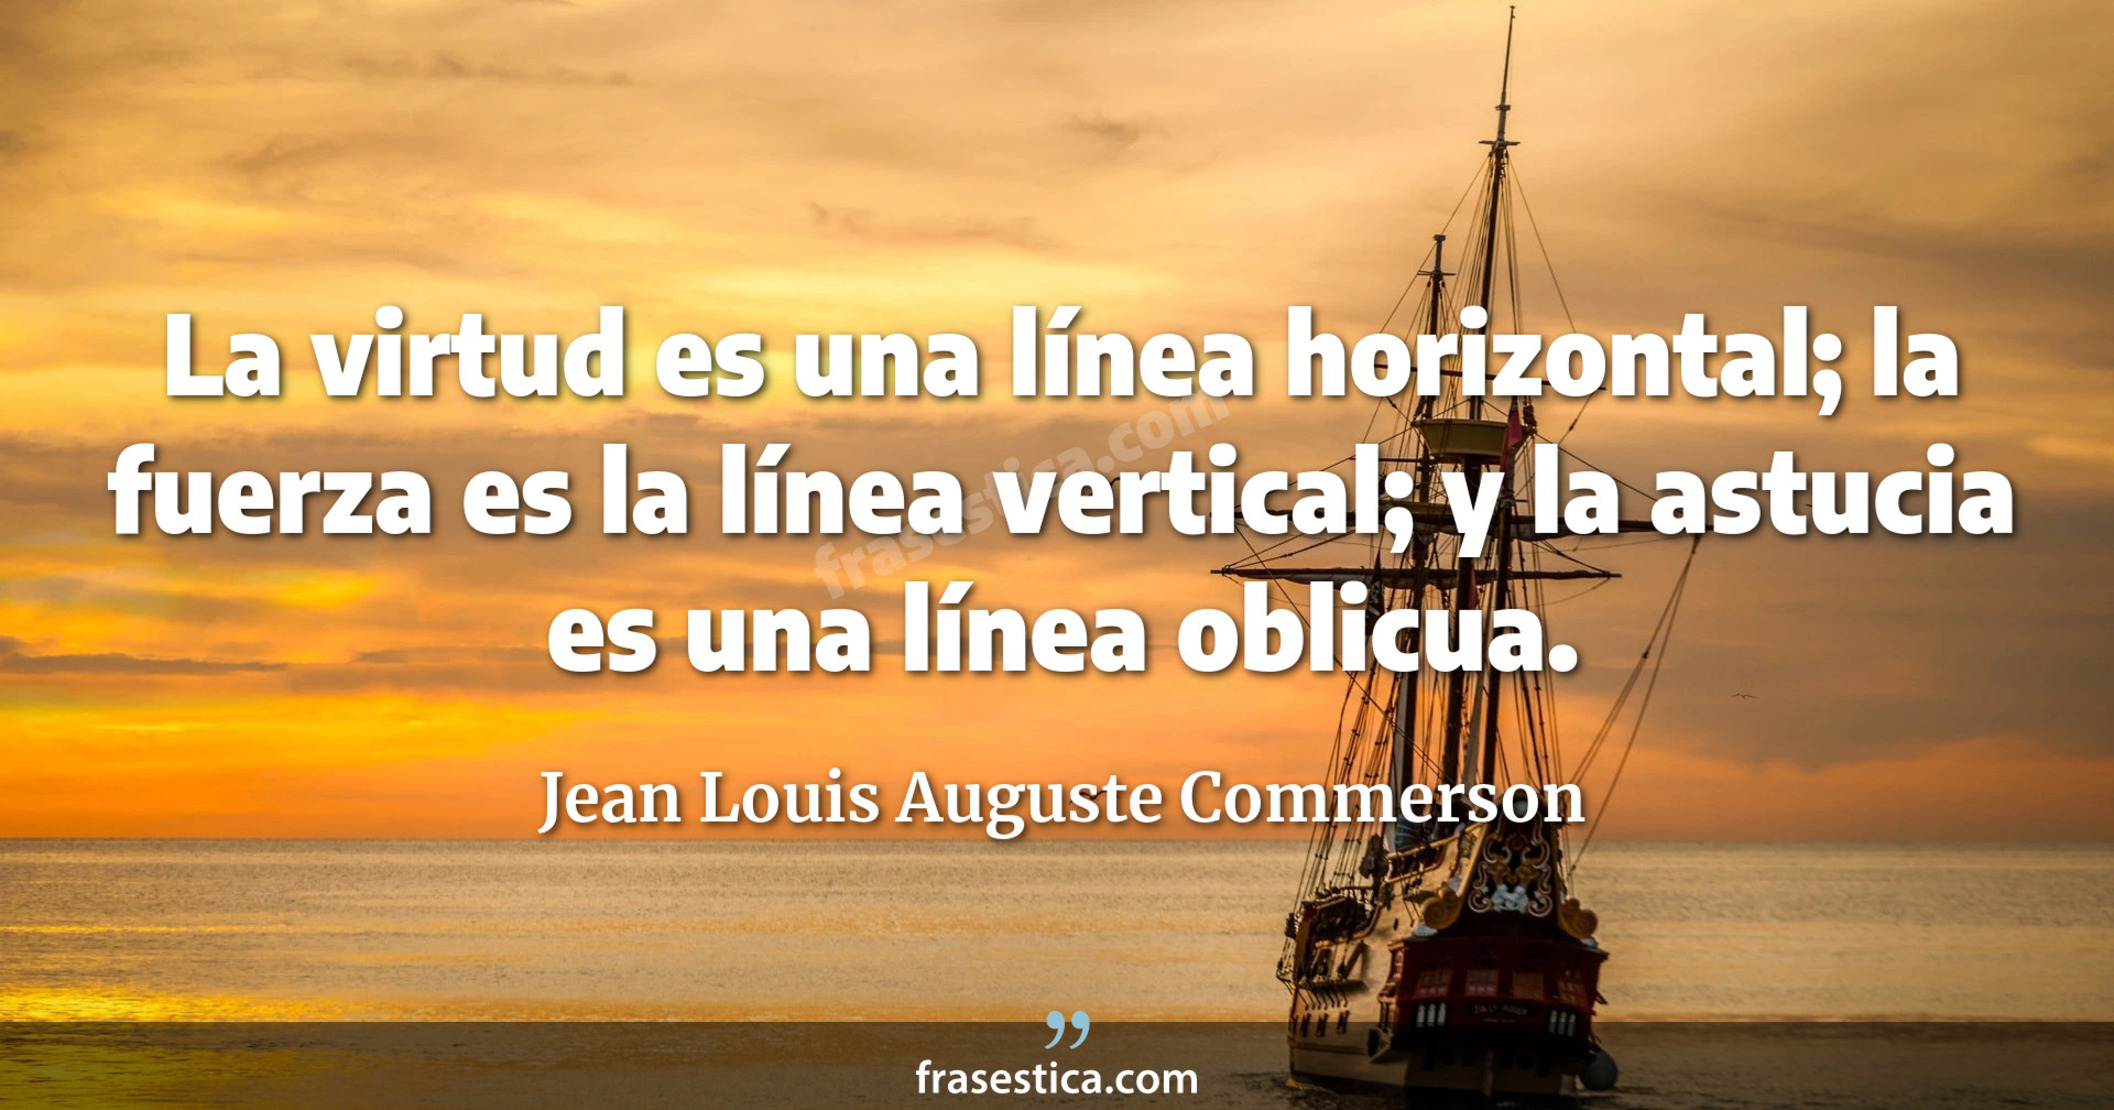 La virtud es una línea horizontal; la fuerza es la línea vertical; y la astucia es una línea oblicua. - Jean Louis Auguste Commerson